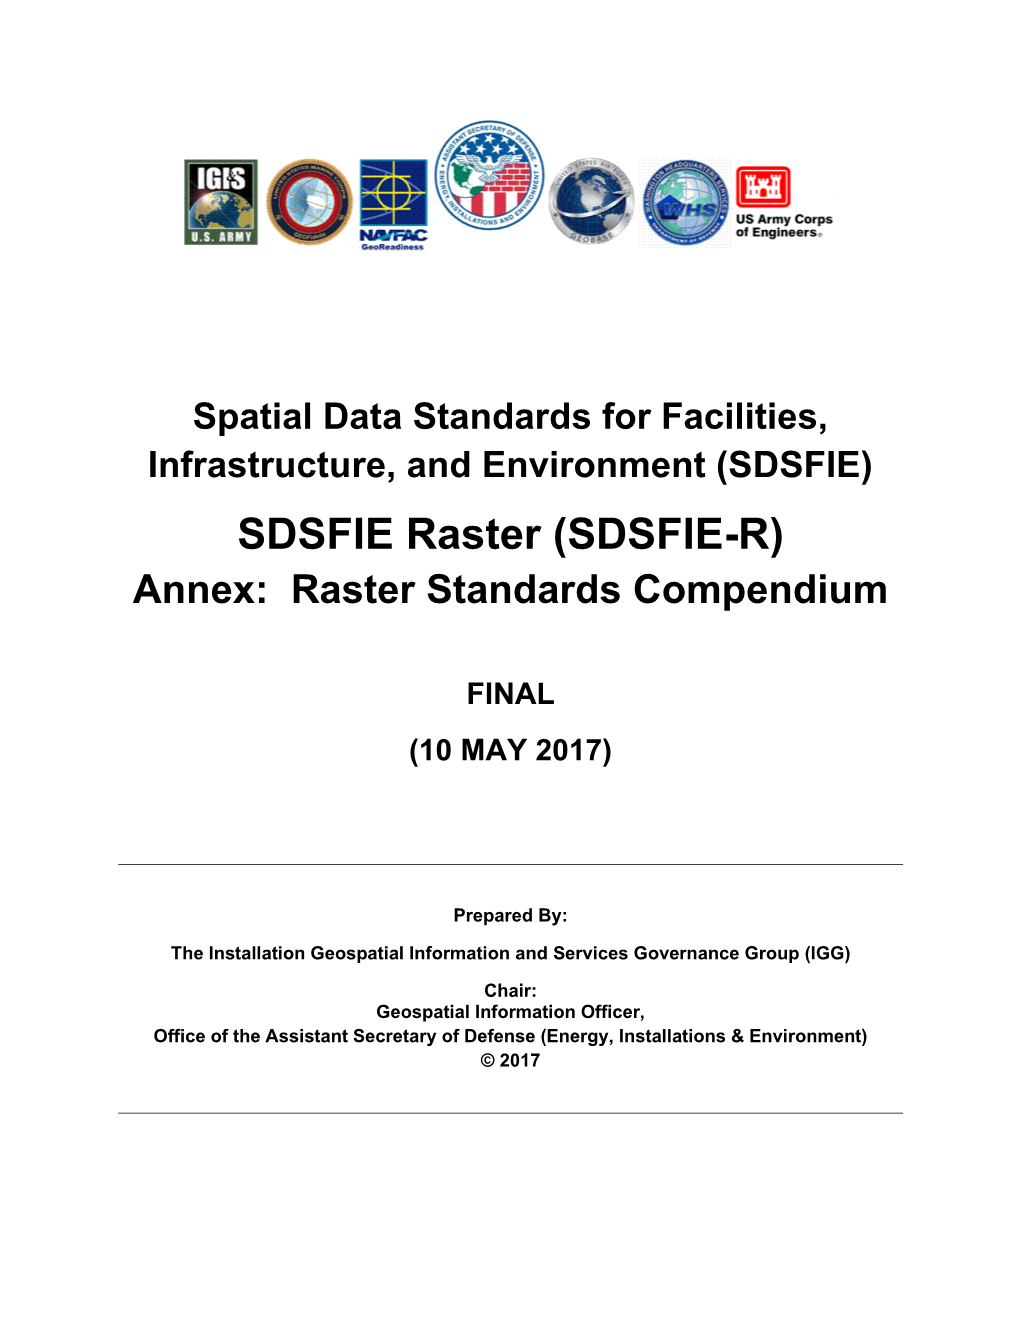 SDSFIE-R Annex: Raster Standards Compendium